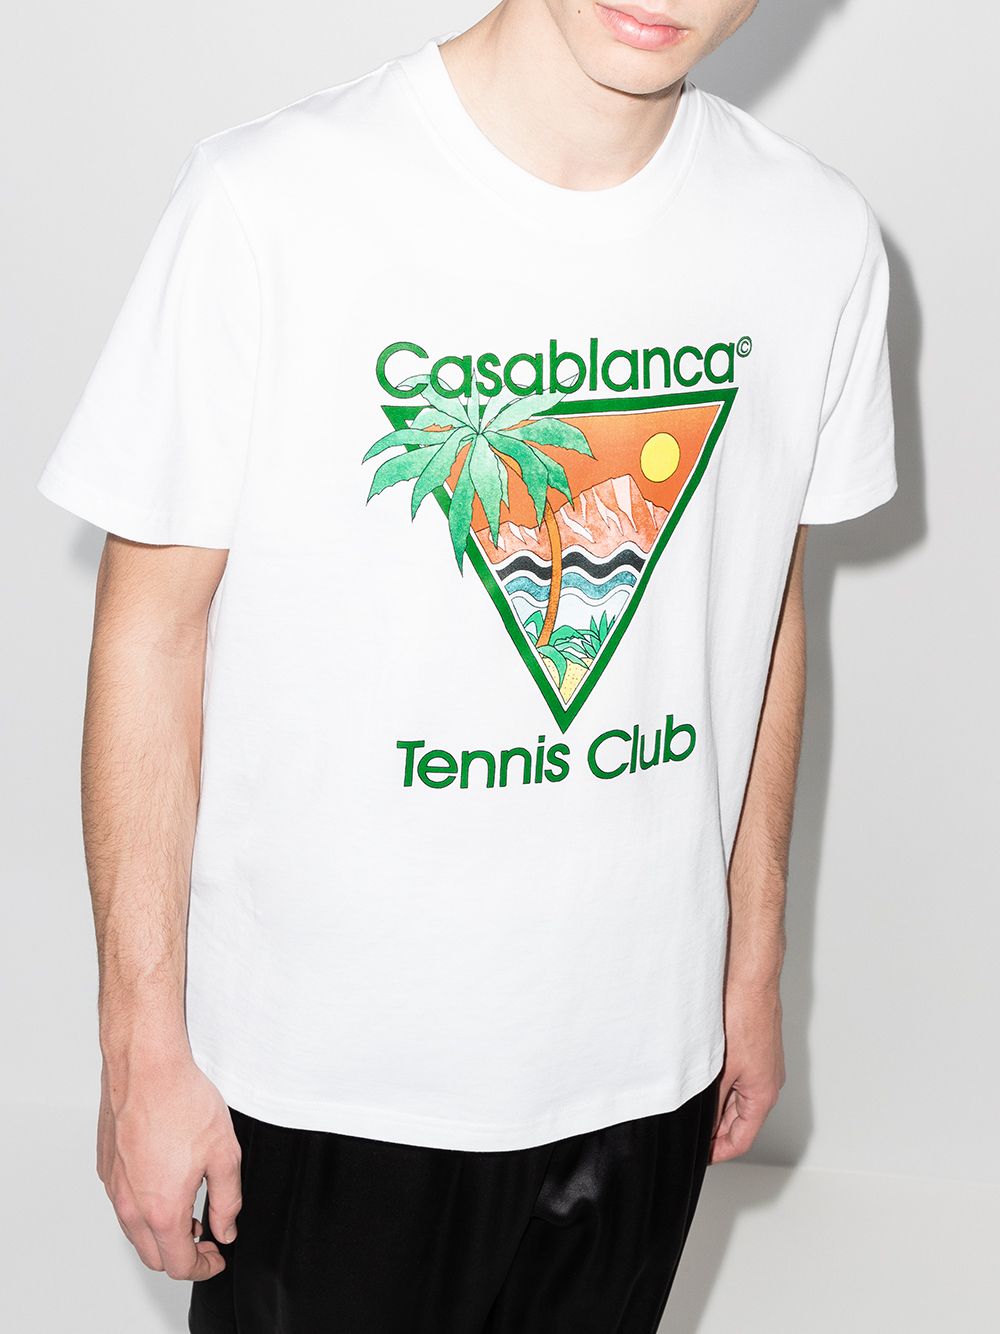 фото Casablanca футболка tennis club с круглым вырезом